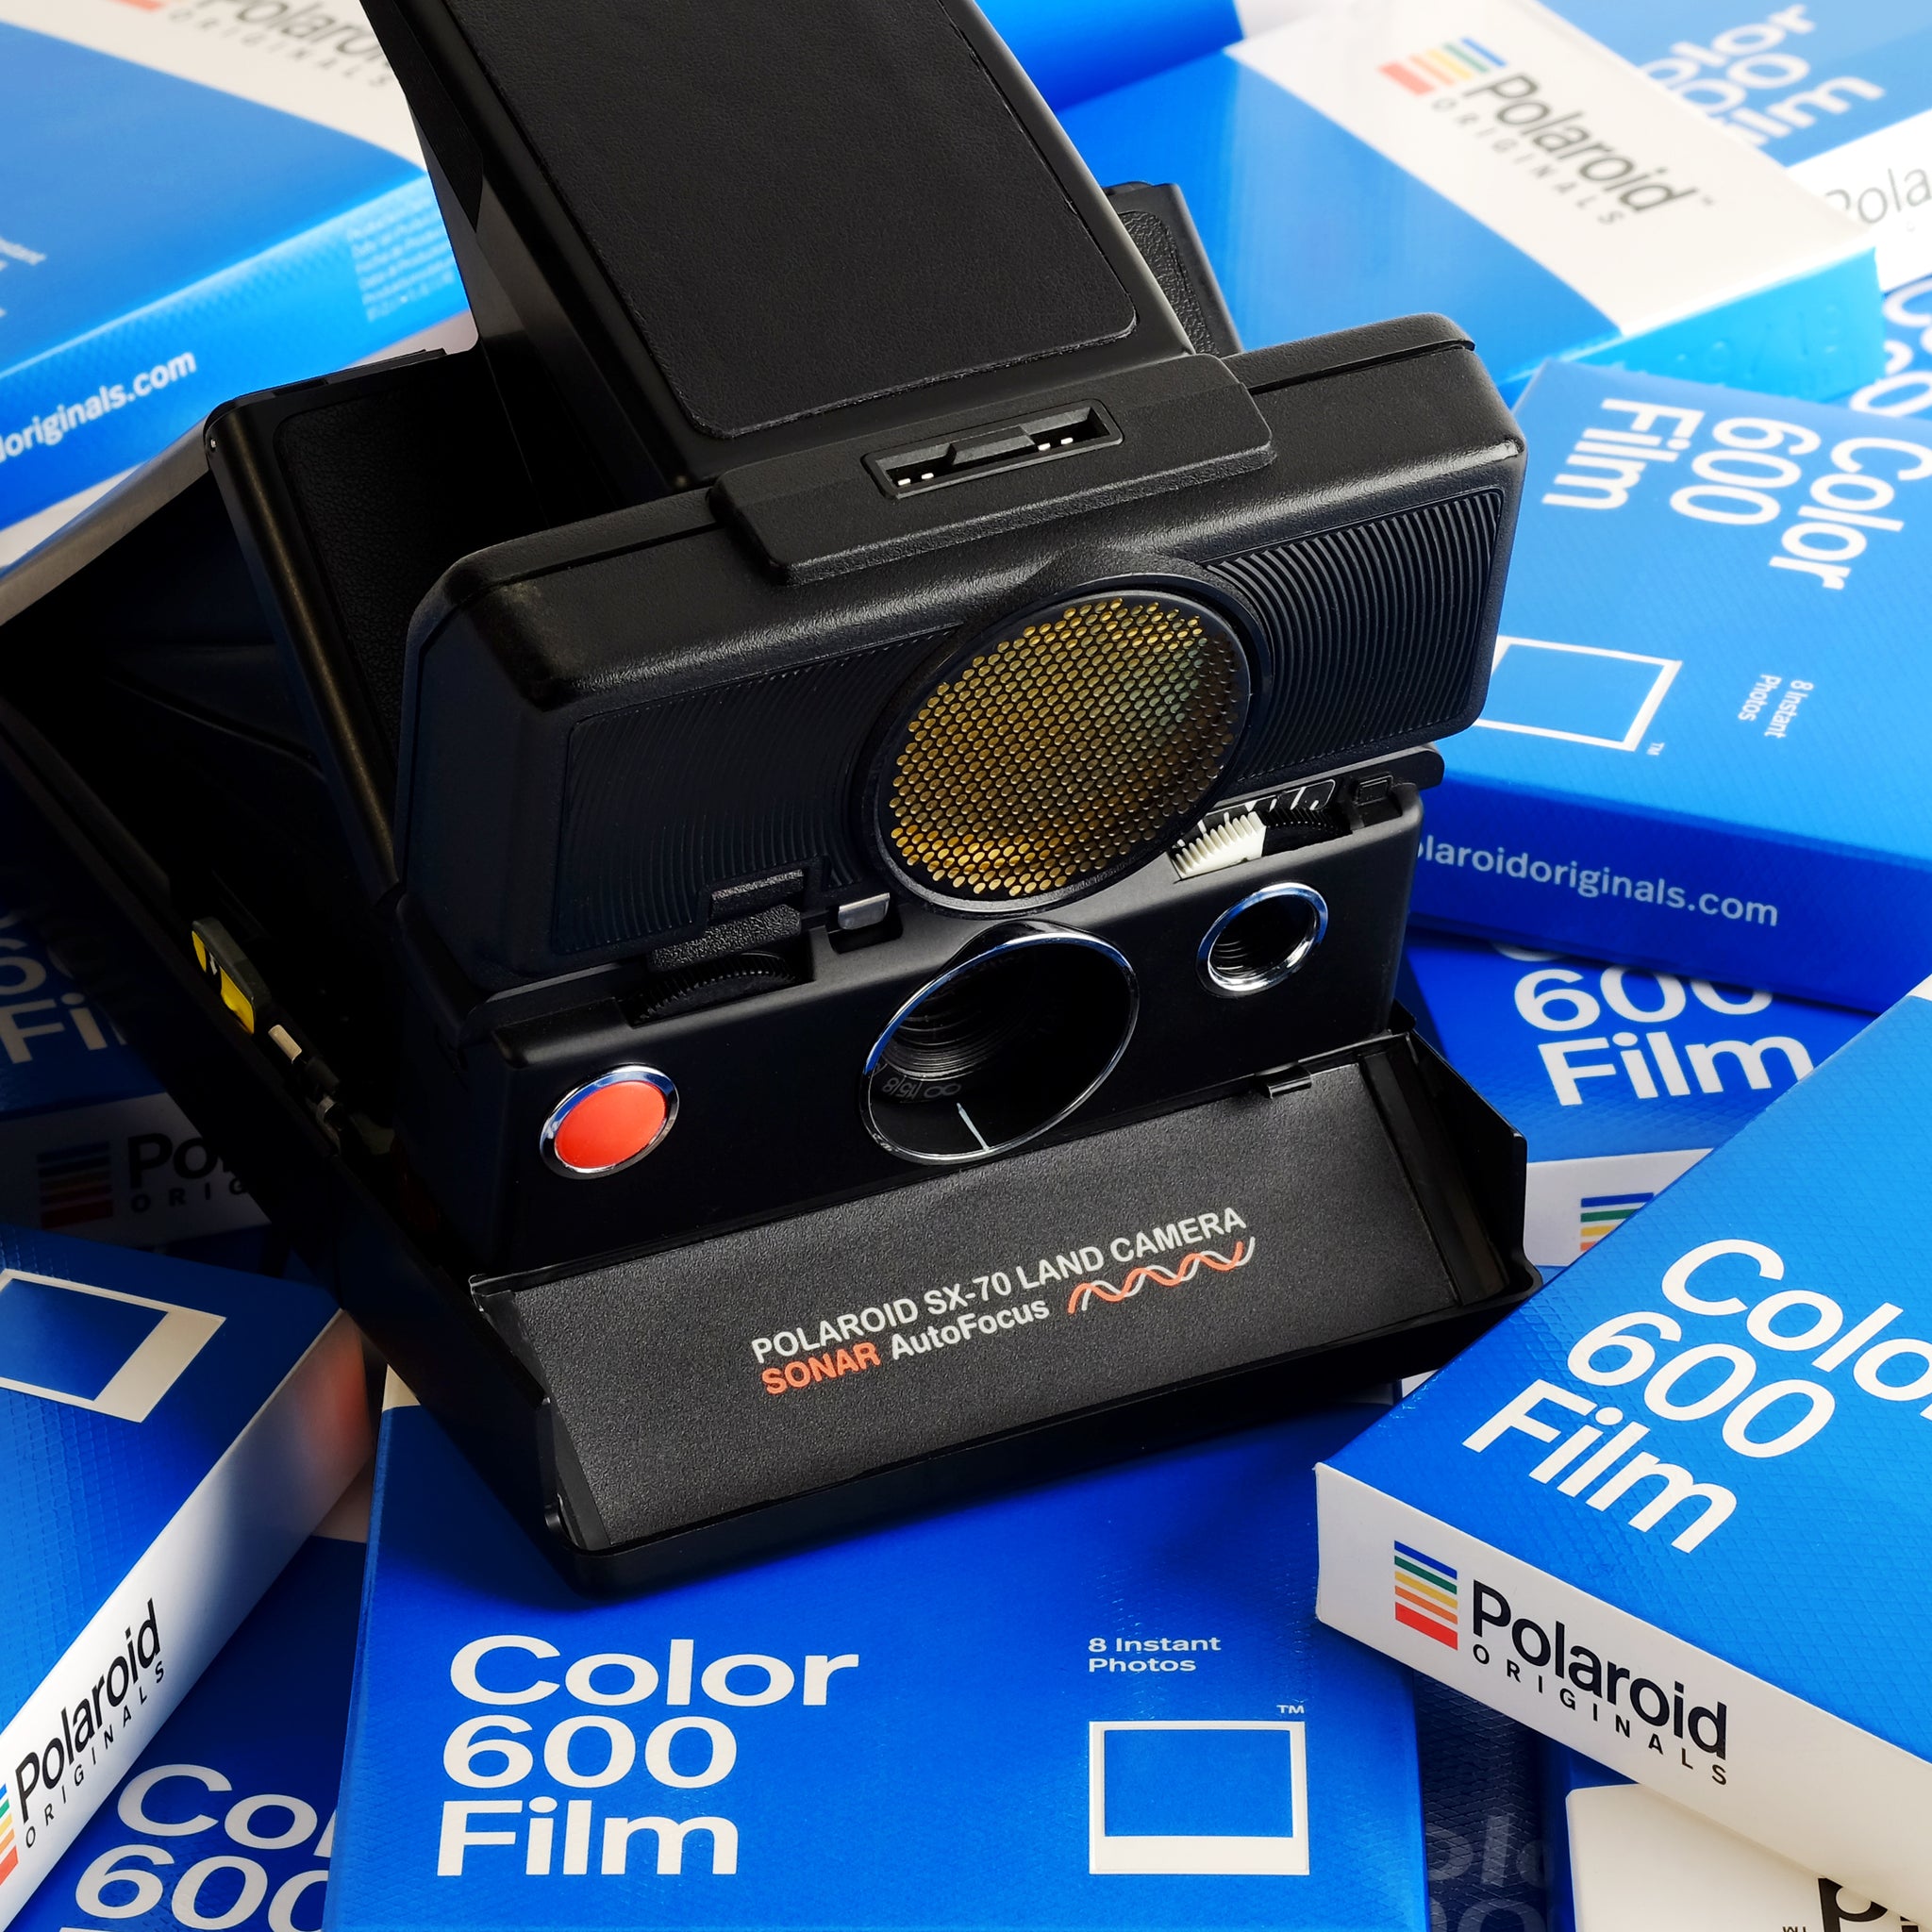 How do I insert Polaroid film into the camera? – Polaroid Support